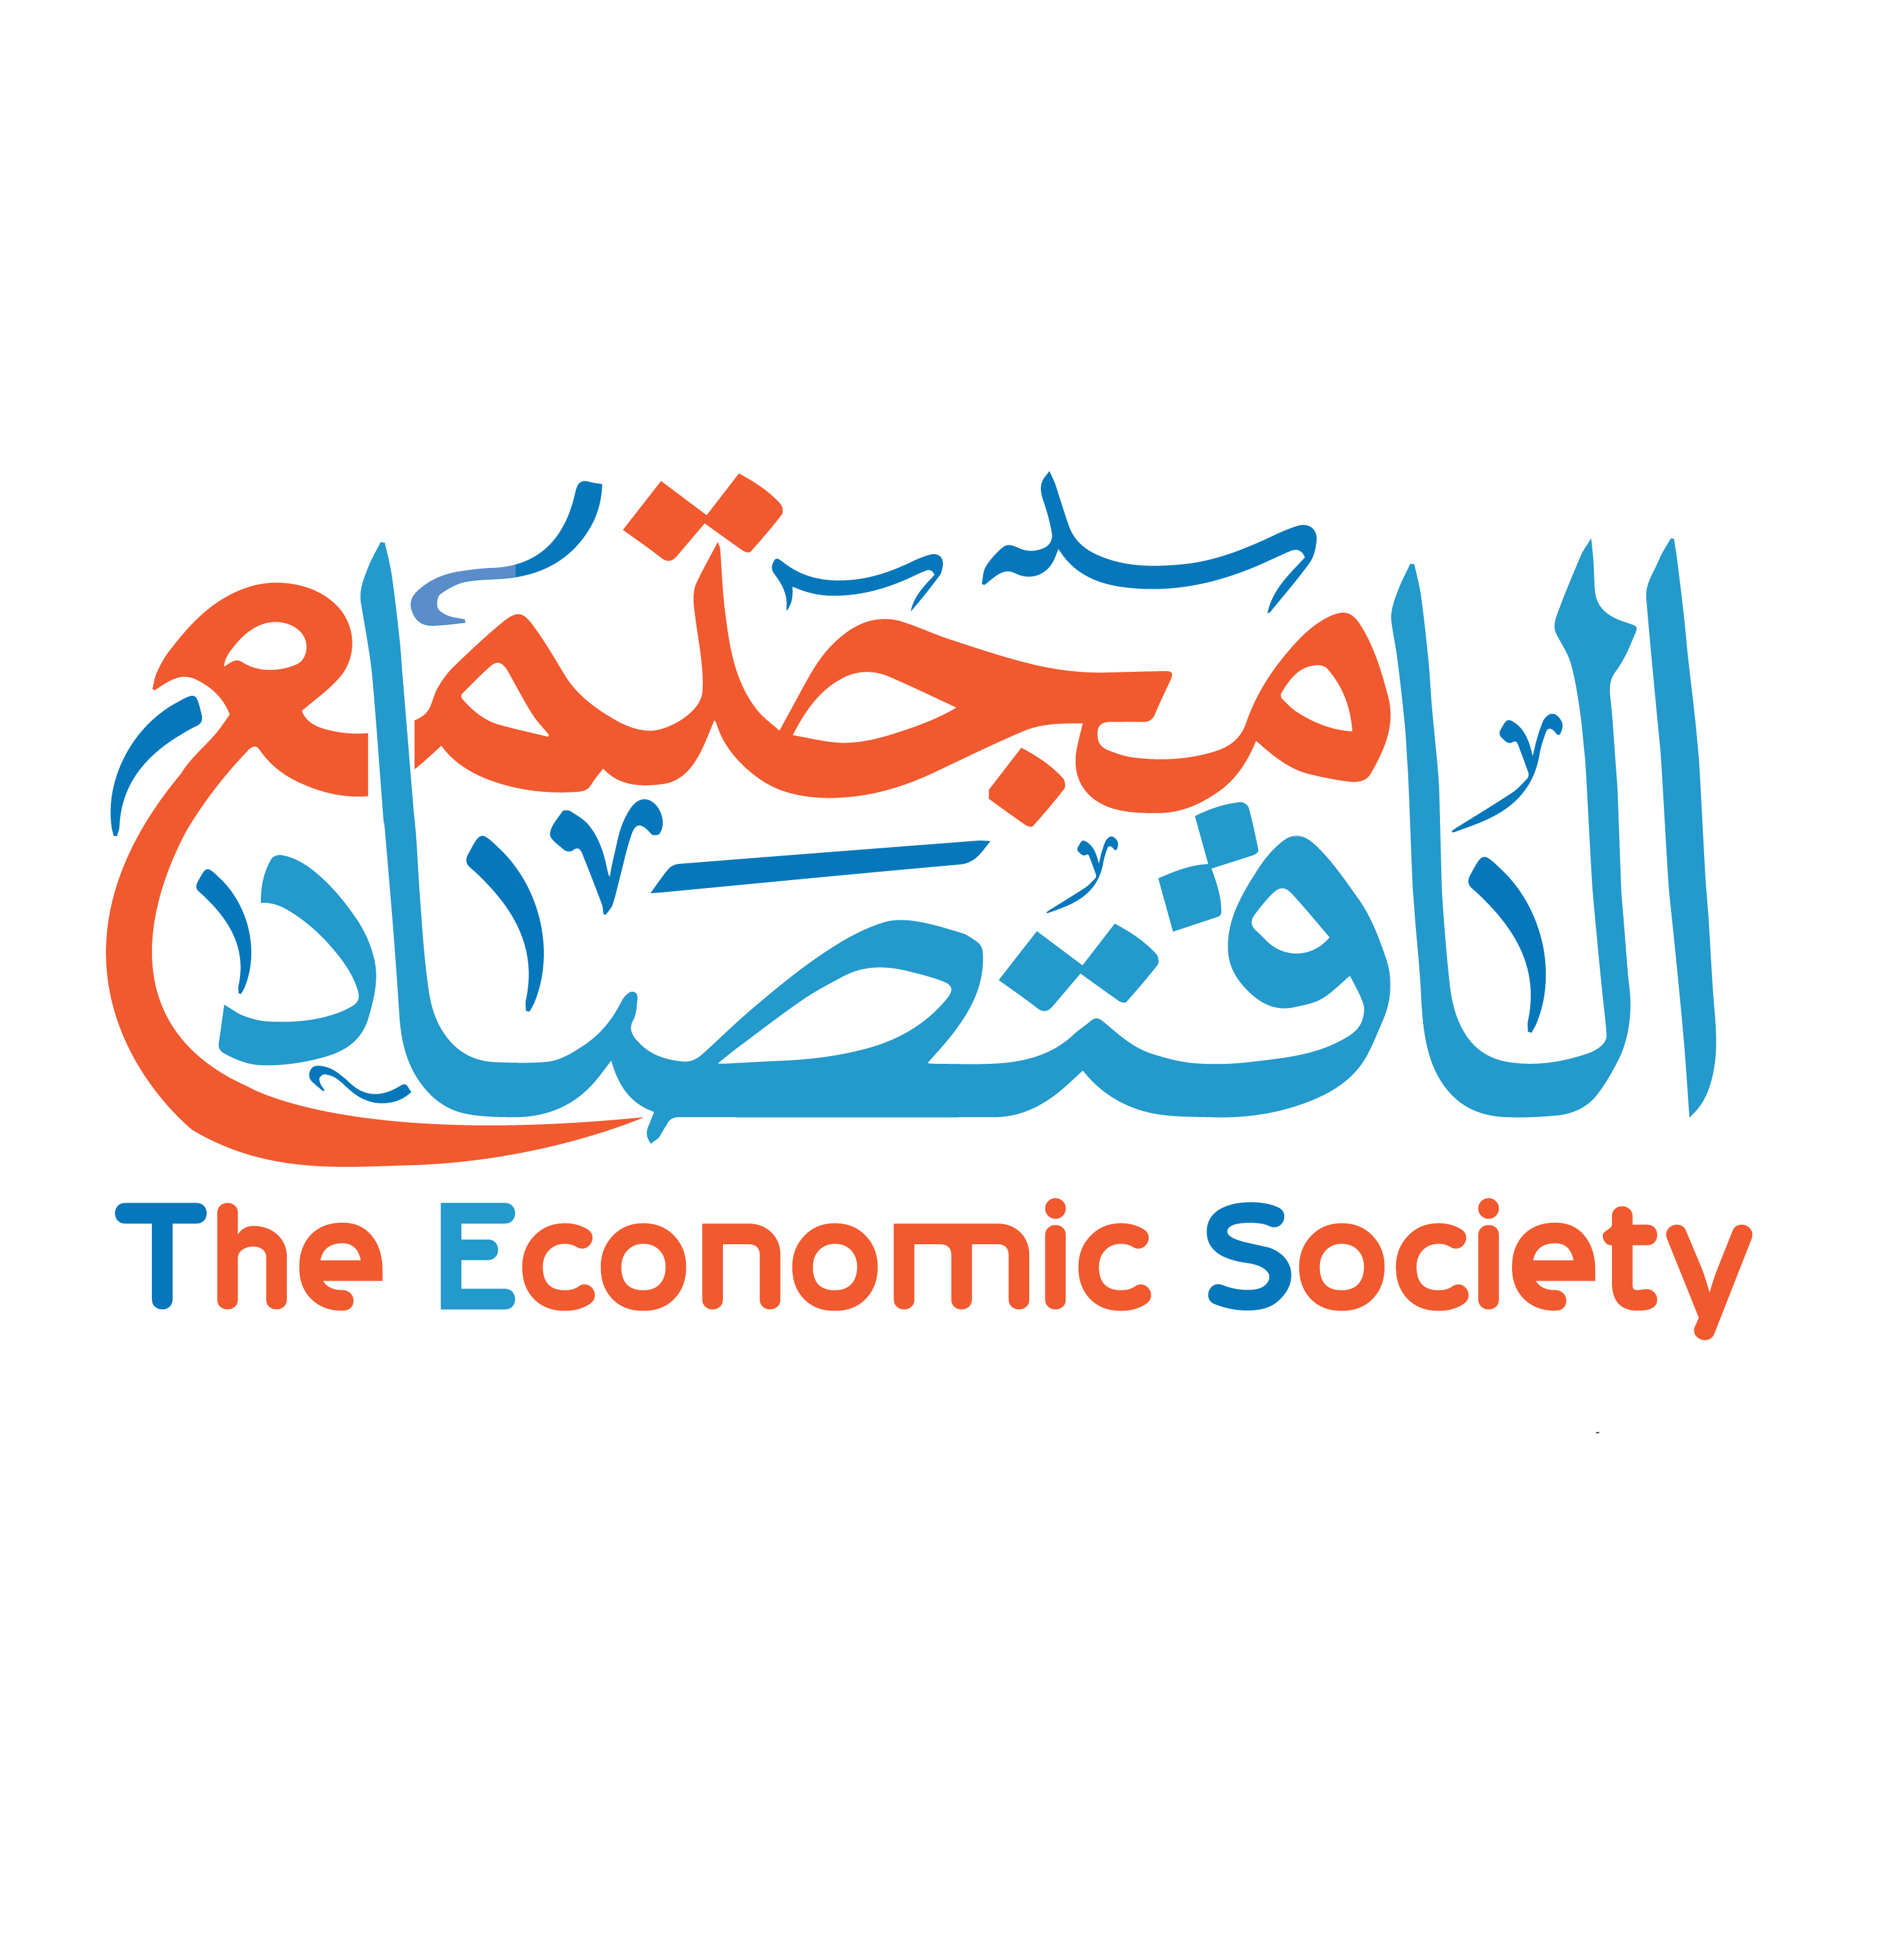 The Economic Society